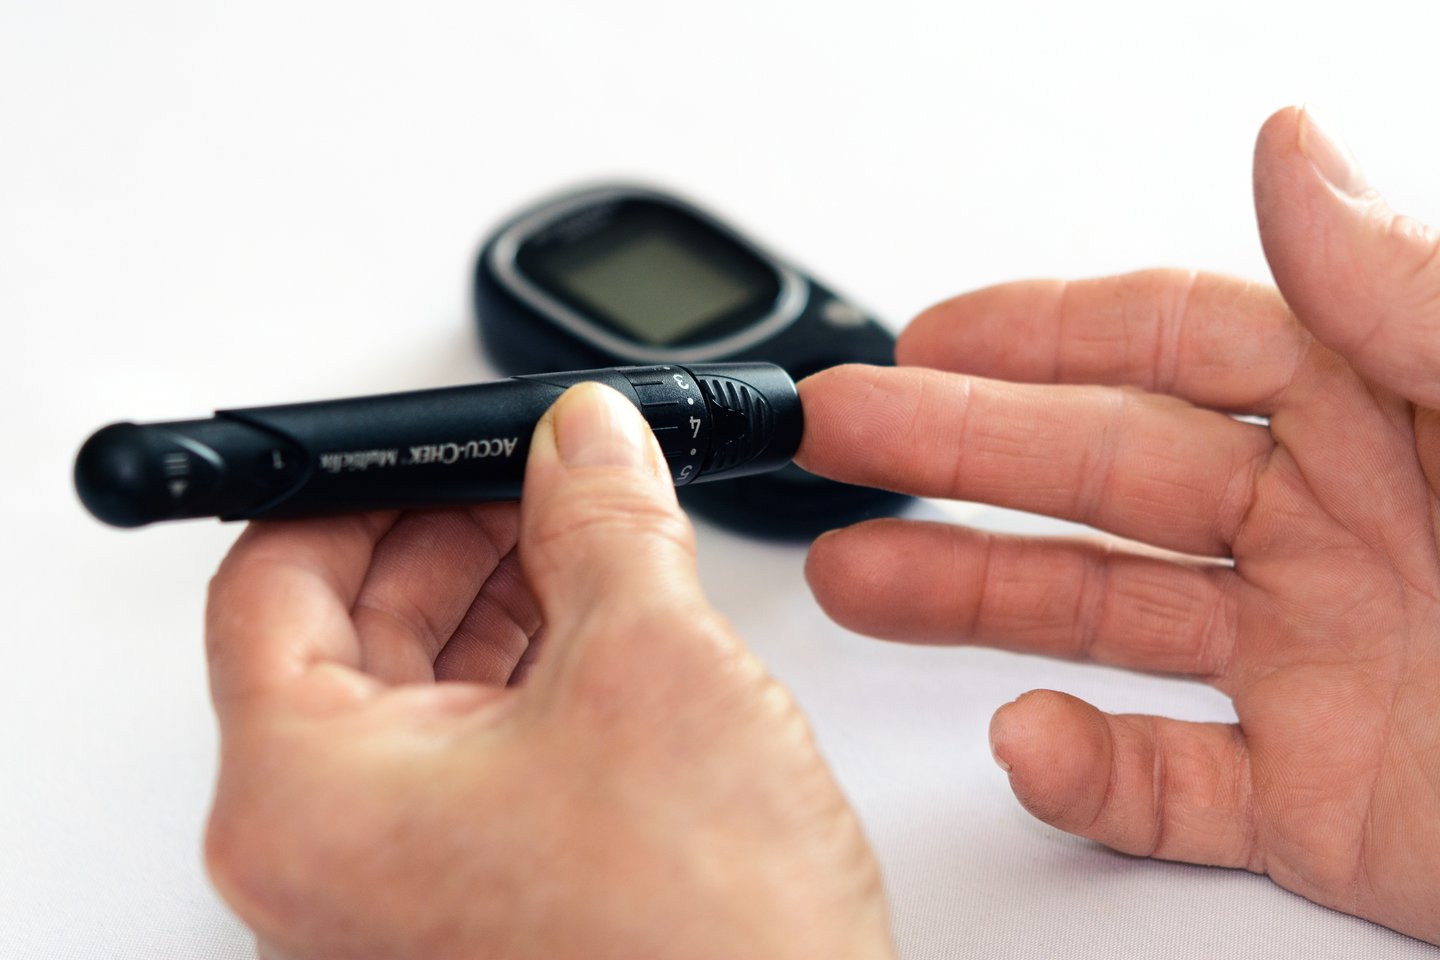 Daugelis sergančiųjų diabetu vis dar leidžiasi insuliną „iš akies“, nesikreipia į specialistus pagalbos ir vėliau sulaukia gyvybei grėsmingų pasekmių.